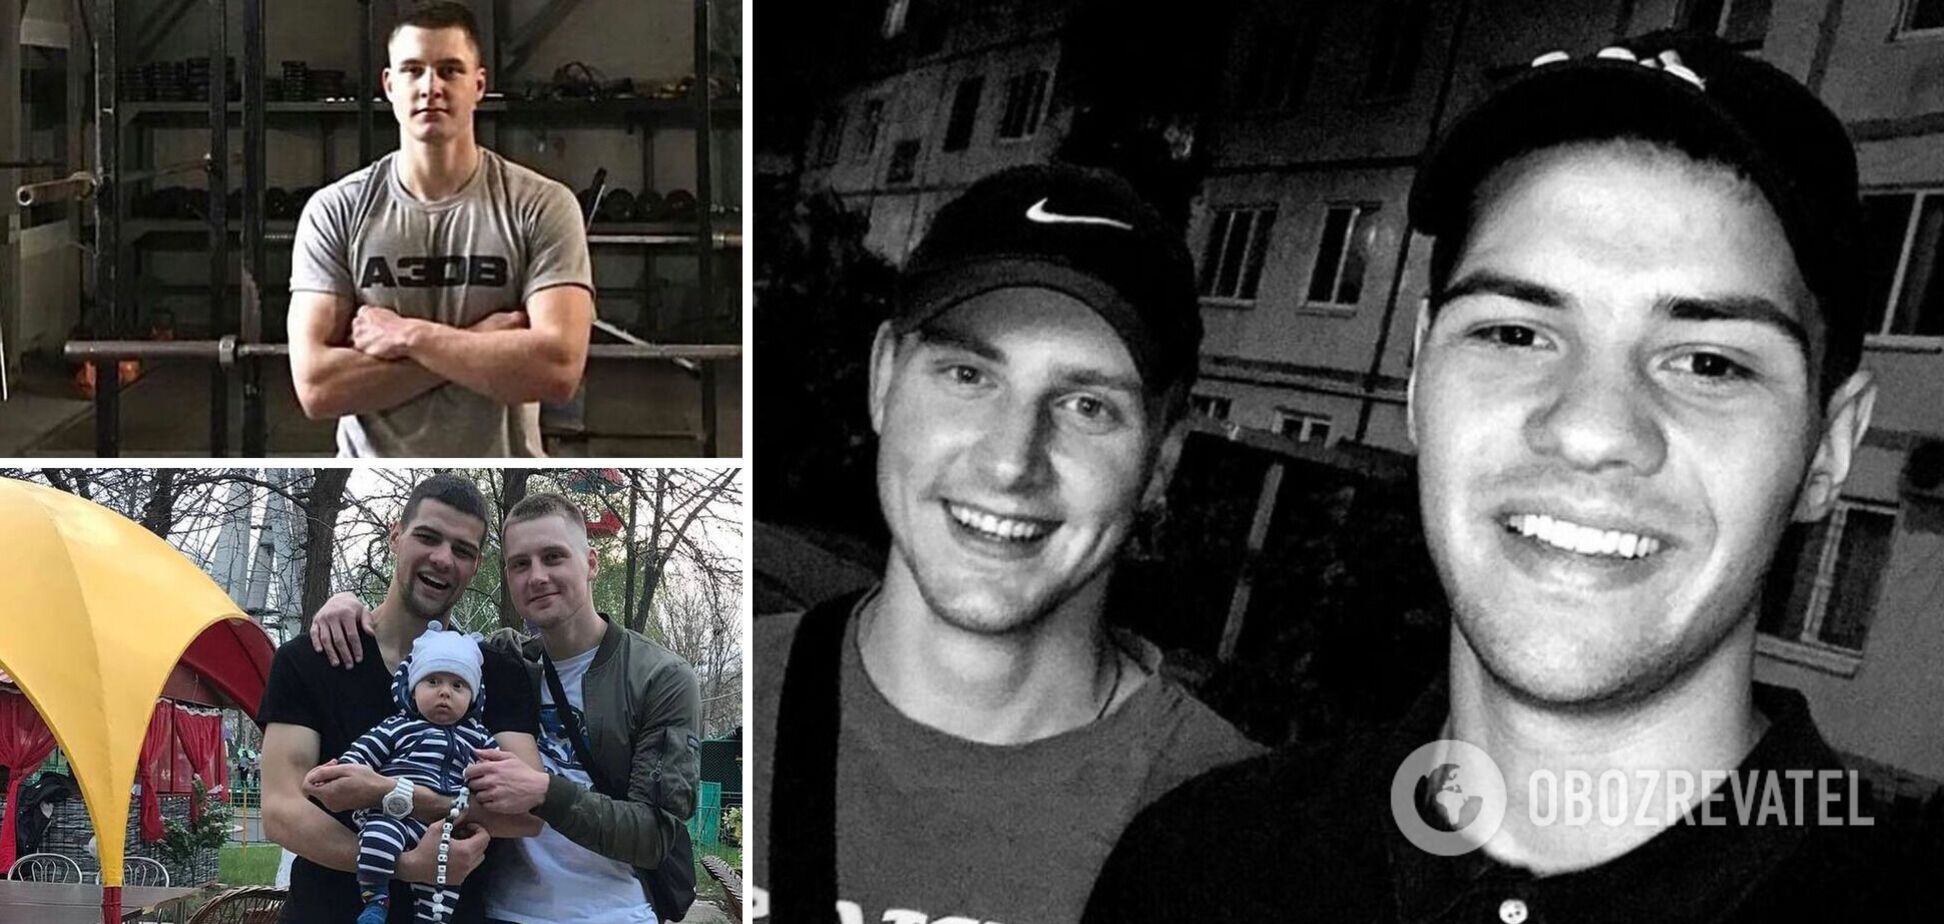 'Хотел вытащить маму': убитый в Еленовке боксер раненым защищал Мариуполь, собирался победить рак и жениться